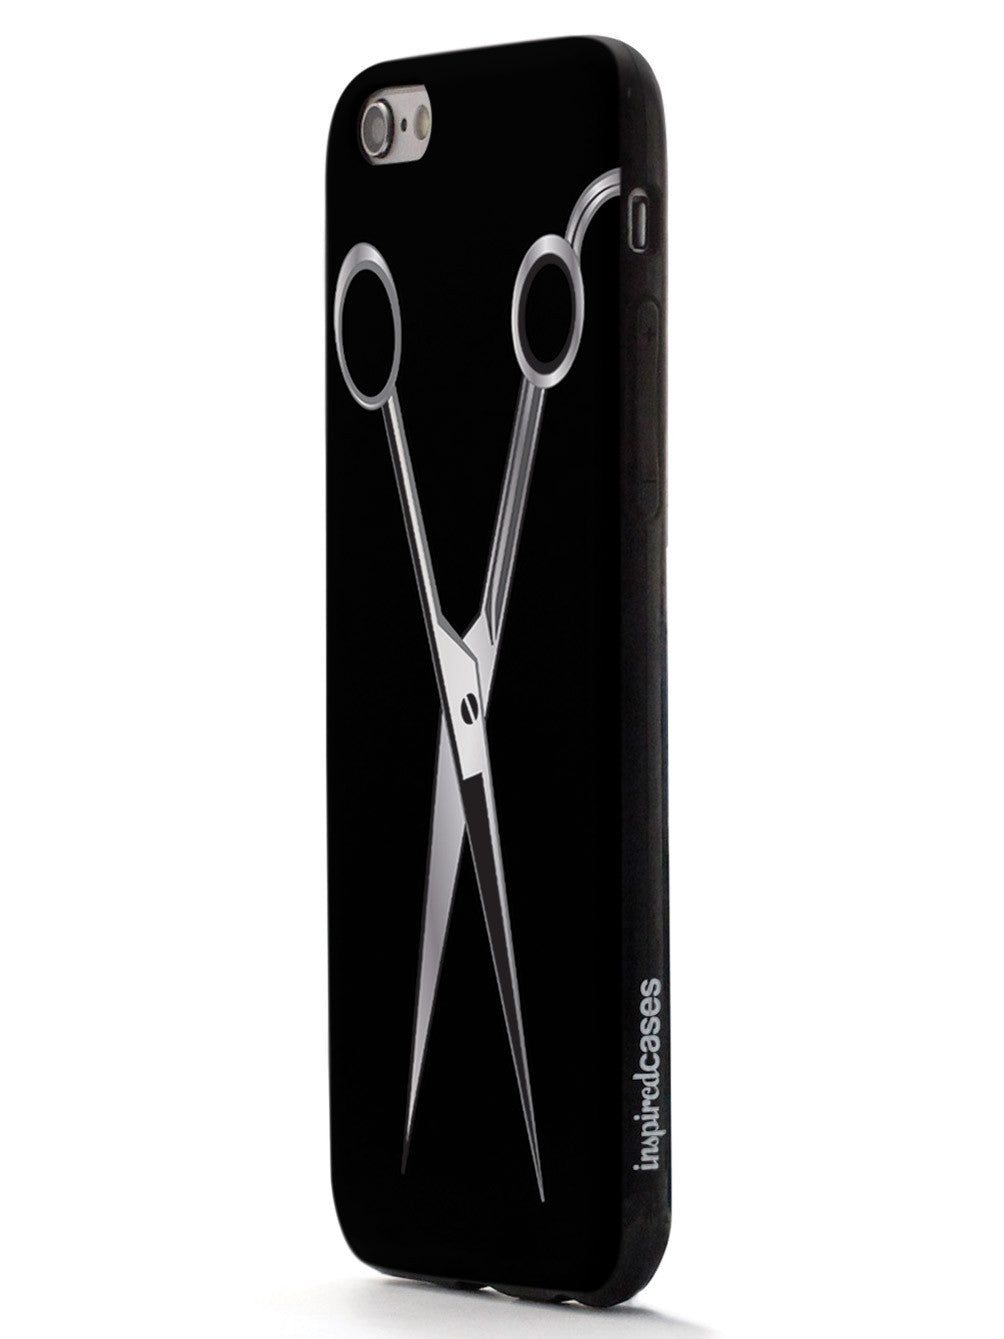 Hairstylist - Scissors Barber Hair Dresser  Case